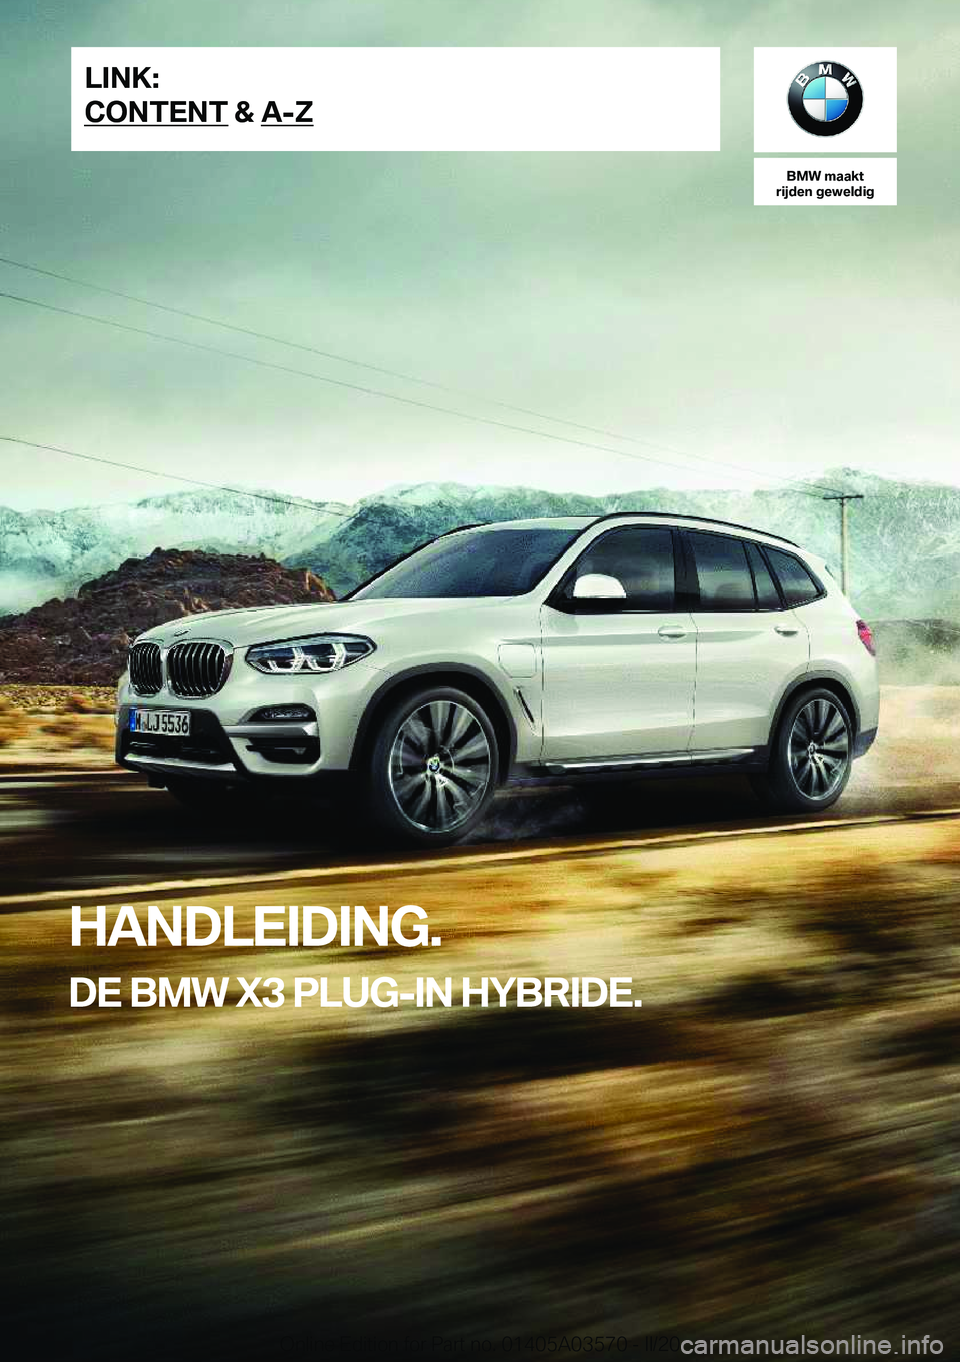 BMW X3 PLUG IN HYBRID 2020  Instructieboekjes (in Dutch) �B�M�W��m�a�a�k�t
�r�i�j�d�e�n��g�e�w�e�l�d�i�g
�H�A�N�D�L�E�I�D�I�N�G�.
�D�E��B�M�W��X�3��P�L�U�G�-�I�N��H�Y�B�R�I�D�E�.�L�I�N�K�:
�C�O�N�T�E�N�T��&��A�-�Z�O�n�l�i�n�e��E�d�i�t�i�o�n��f�o�r